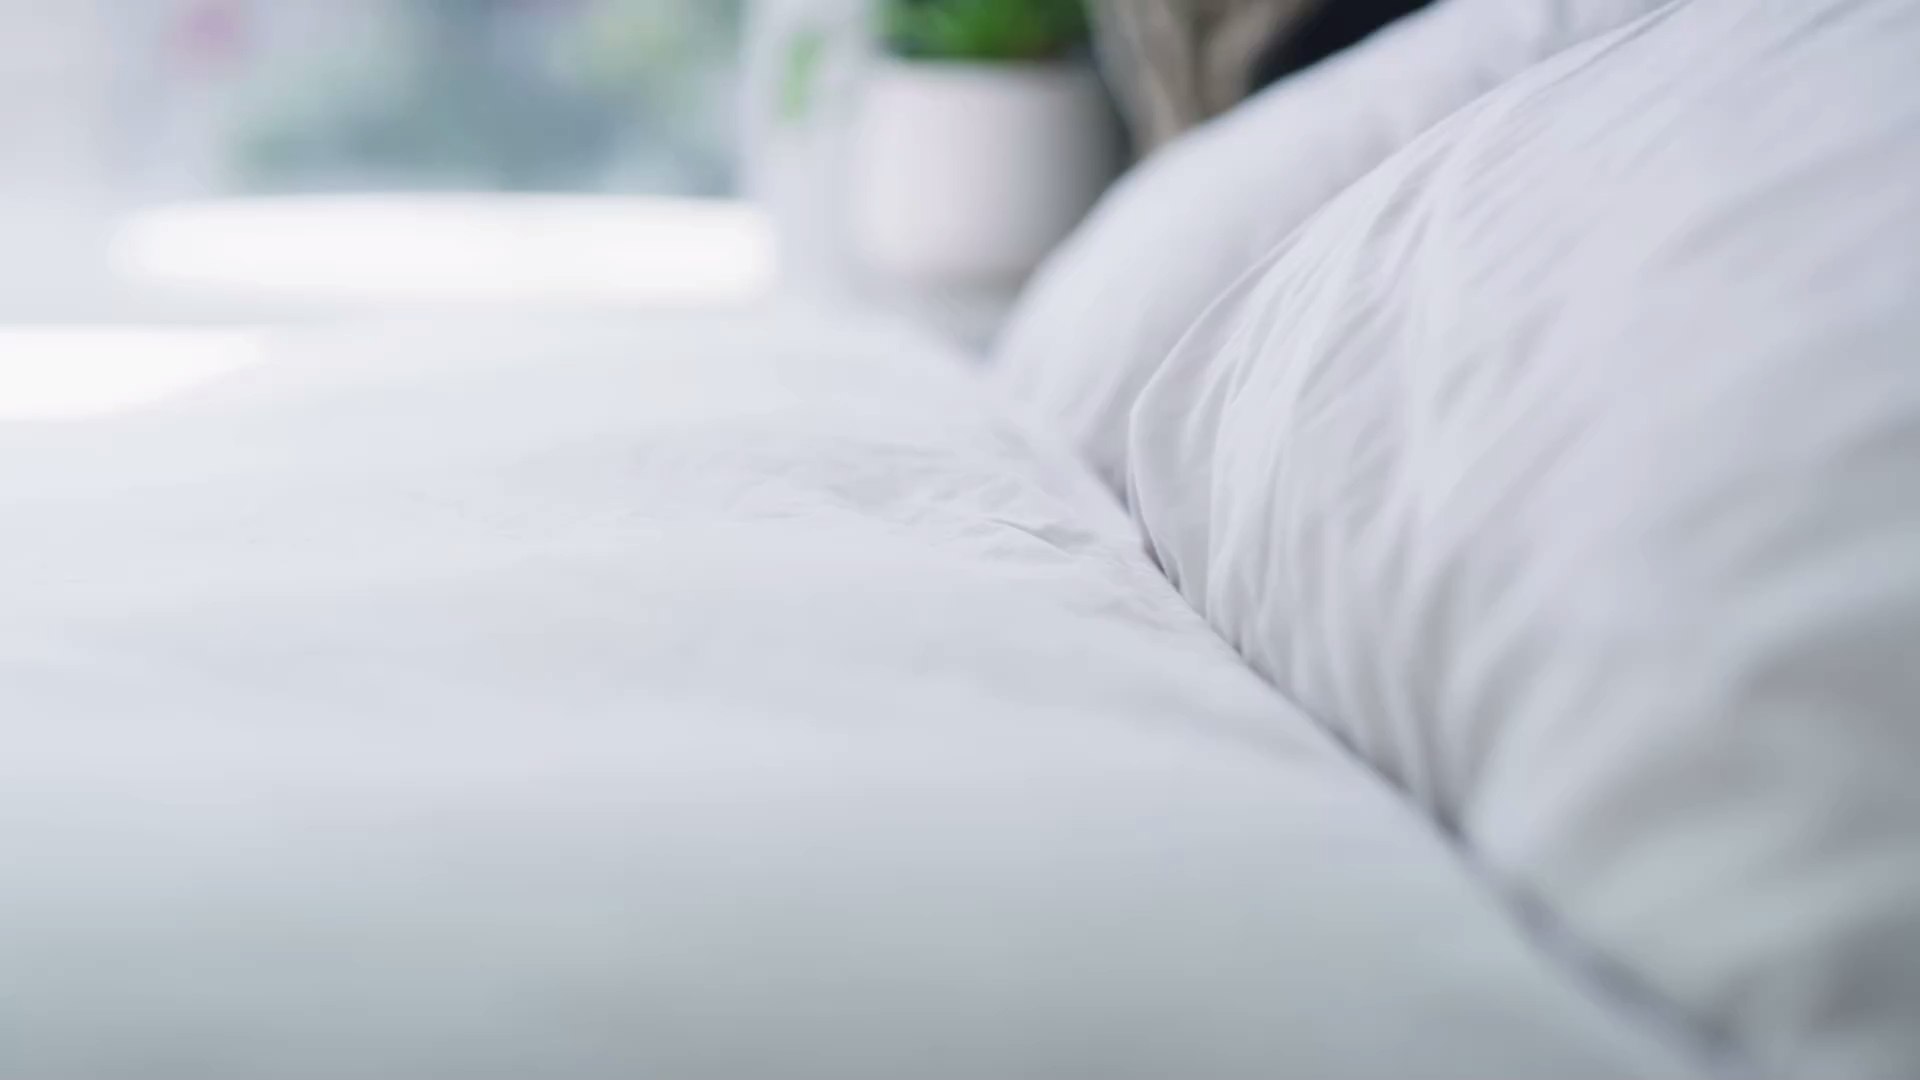 Canicule : comment rafraîchir son lit sans ventilateur grâce à cette astuce  TikTok - Vidéo Dailymotion